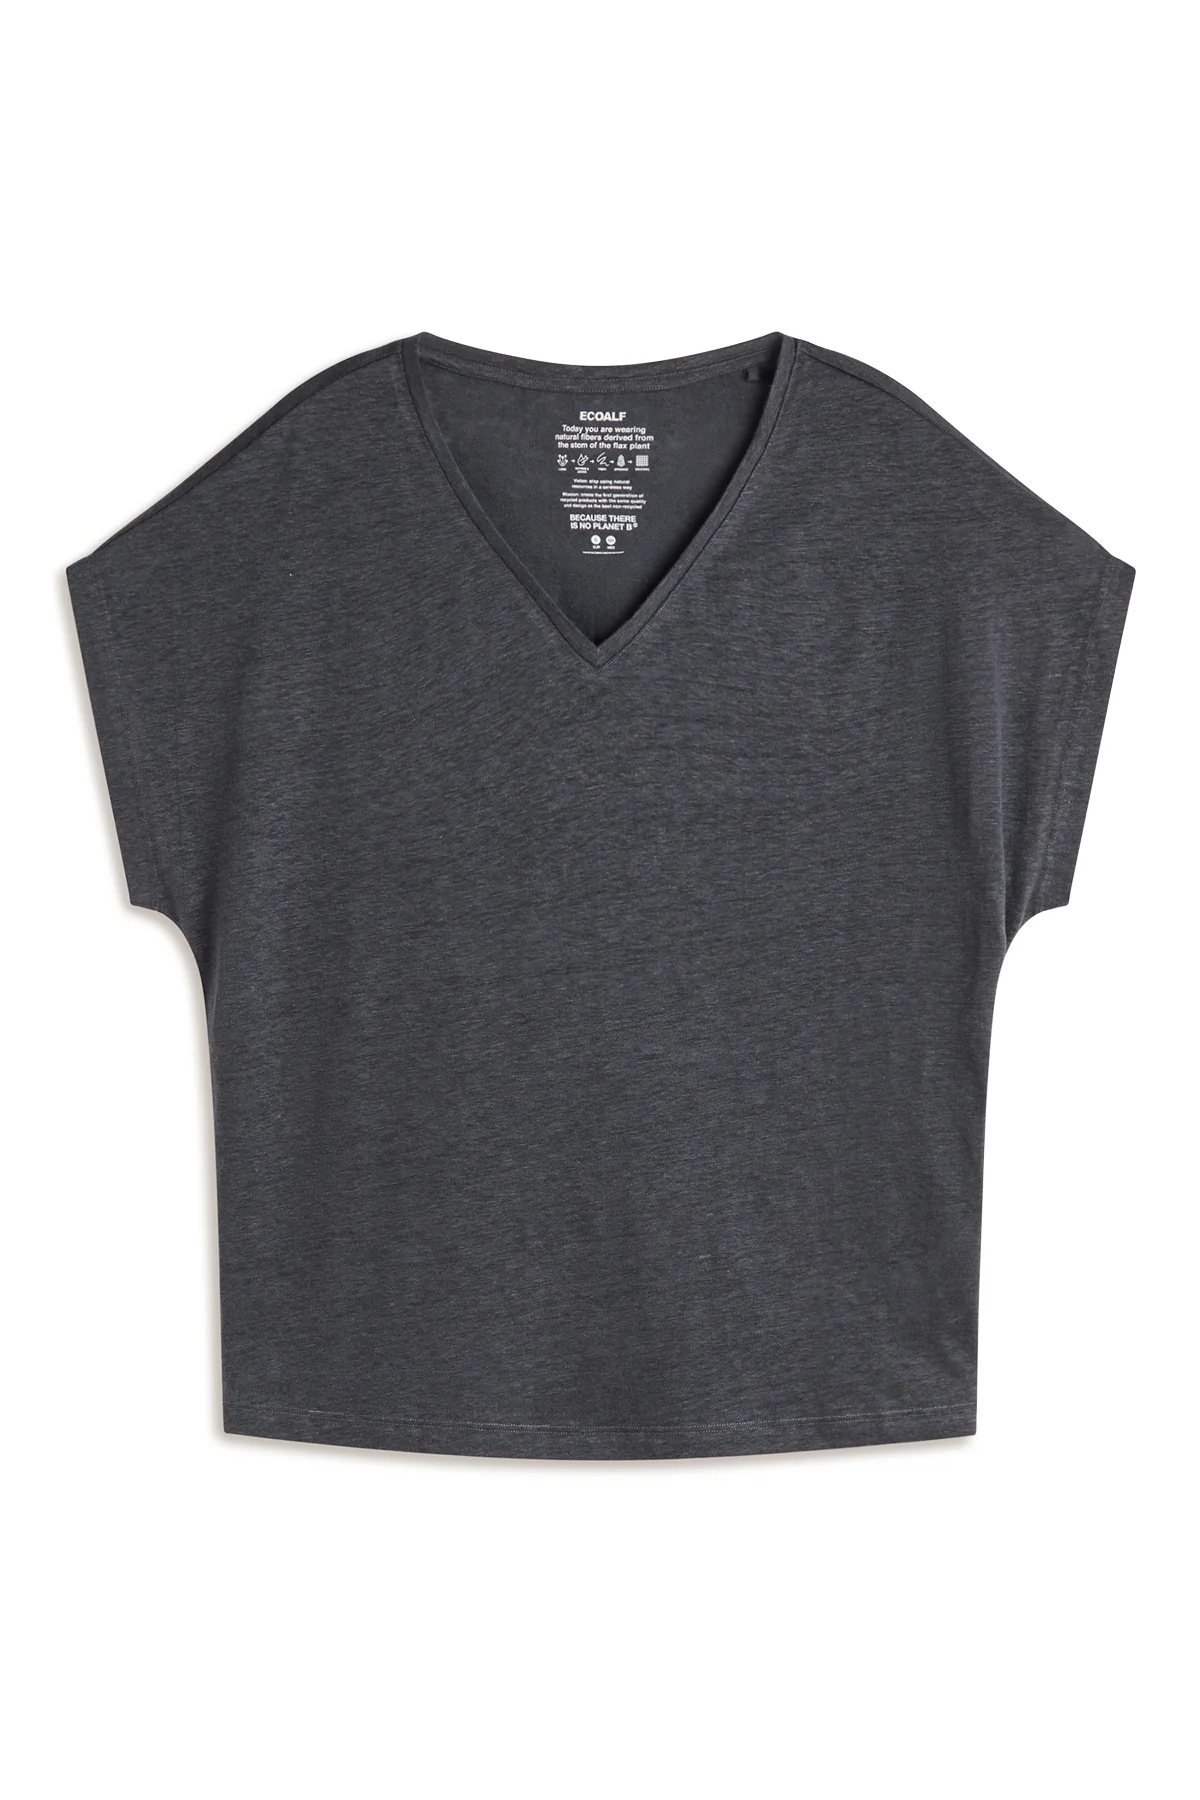 ECOALF camiseta en lino manga corta color gris y escote pico - 3